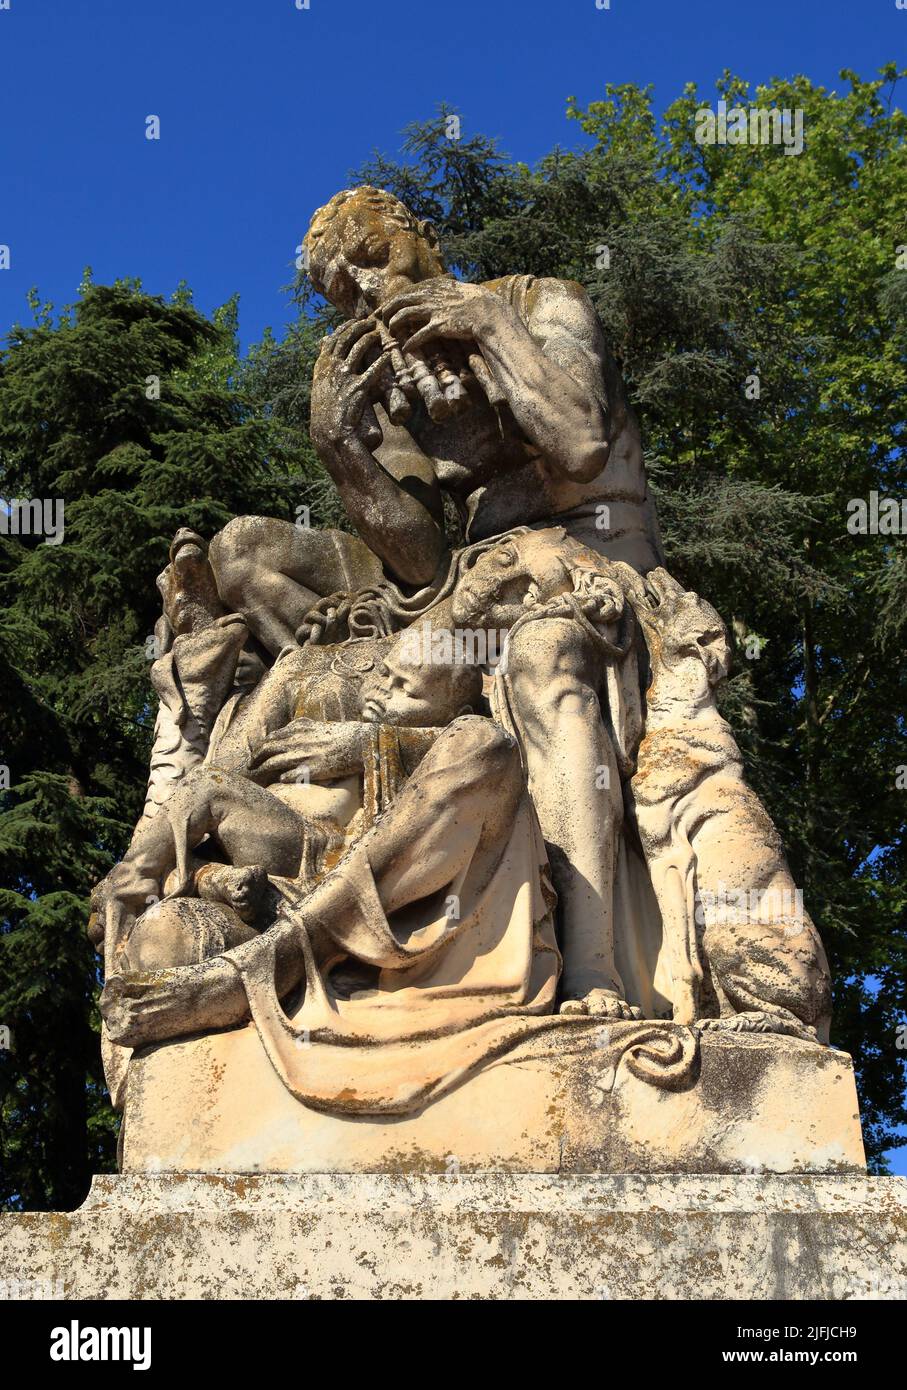 Monumento a Virgilio, Piazza Virgiliana, Mantova, Mantua Italia Foto de stock